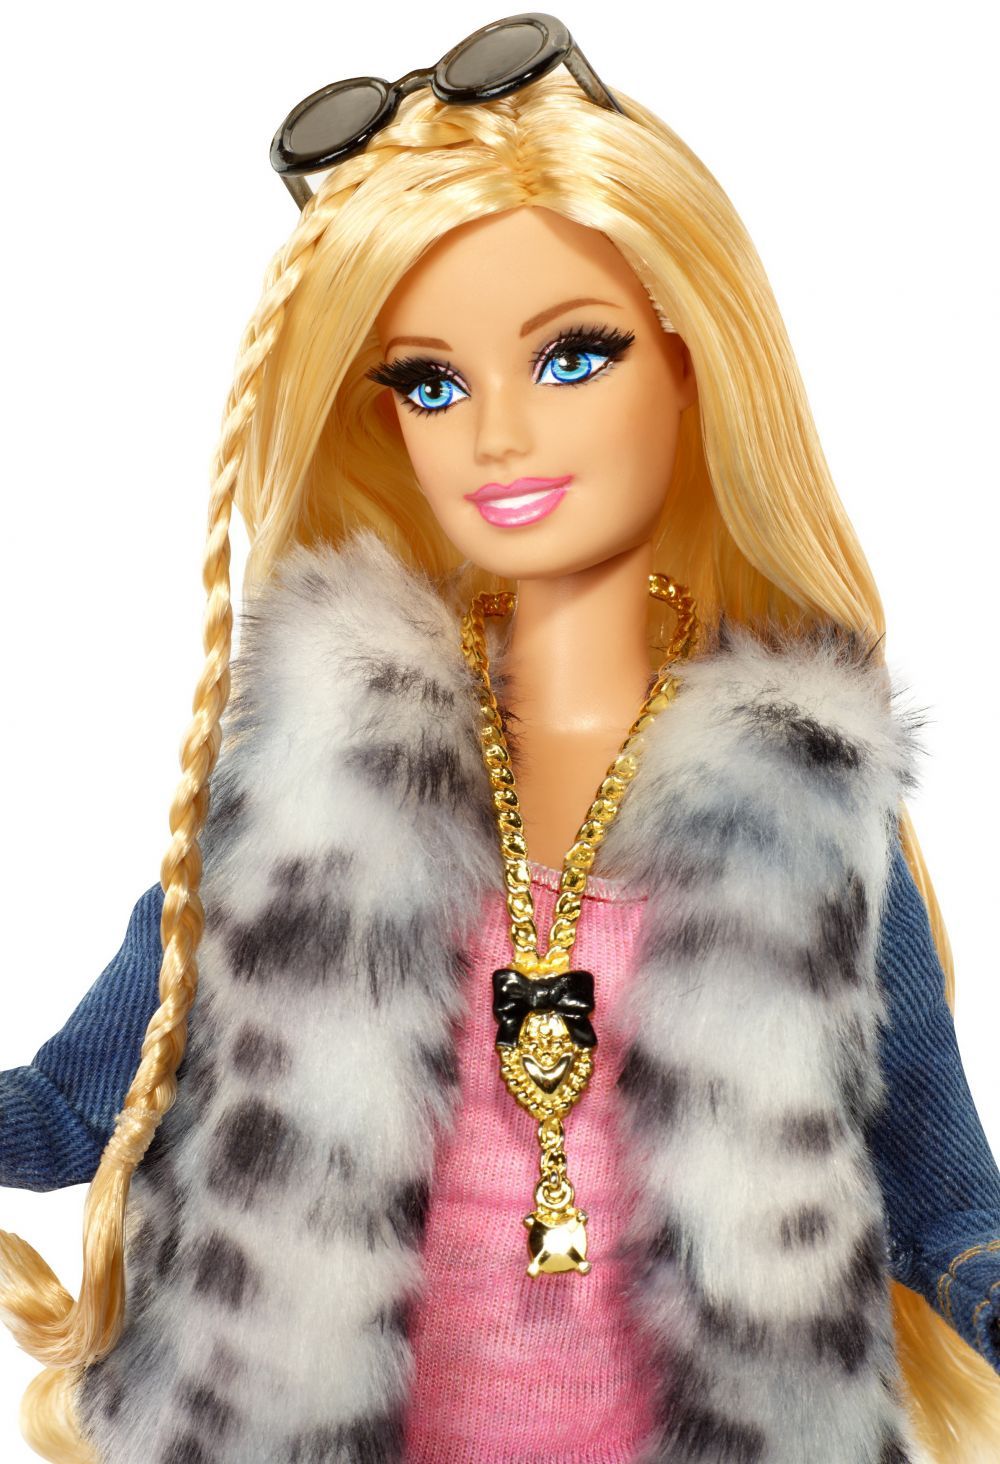 Barbie cu solduri, posterior si sani. Cel mai nou model de papausa, total diferit de tot ce s-a comercializat pana acum